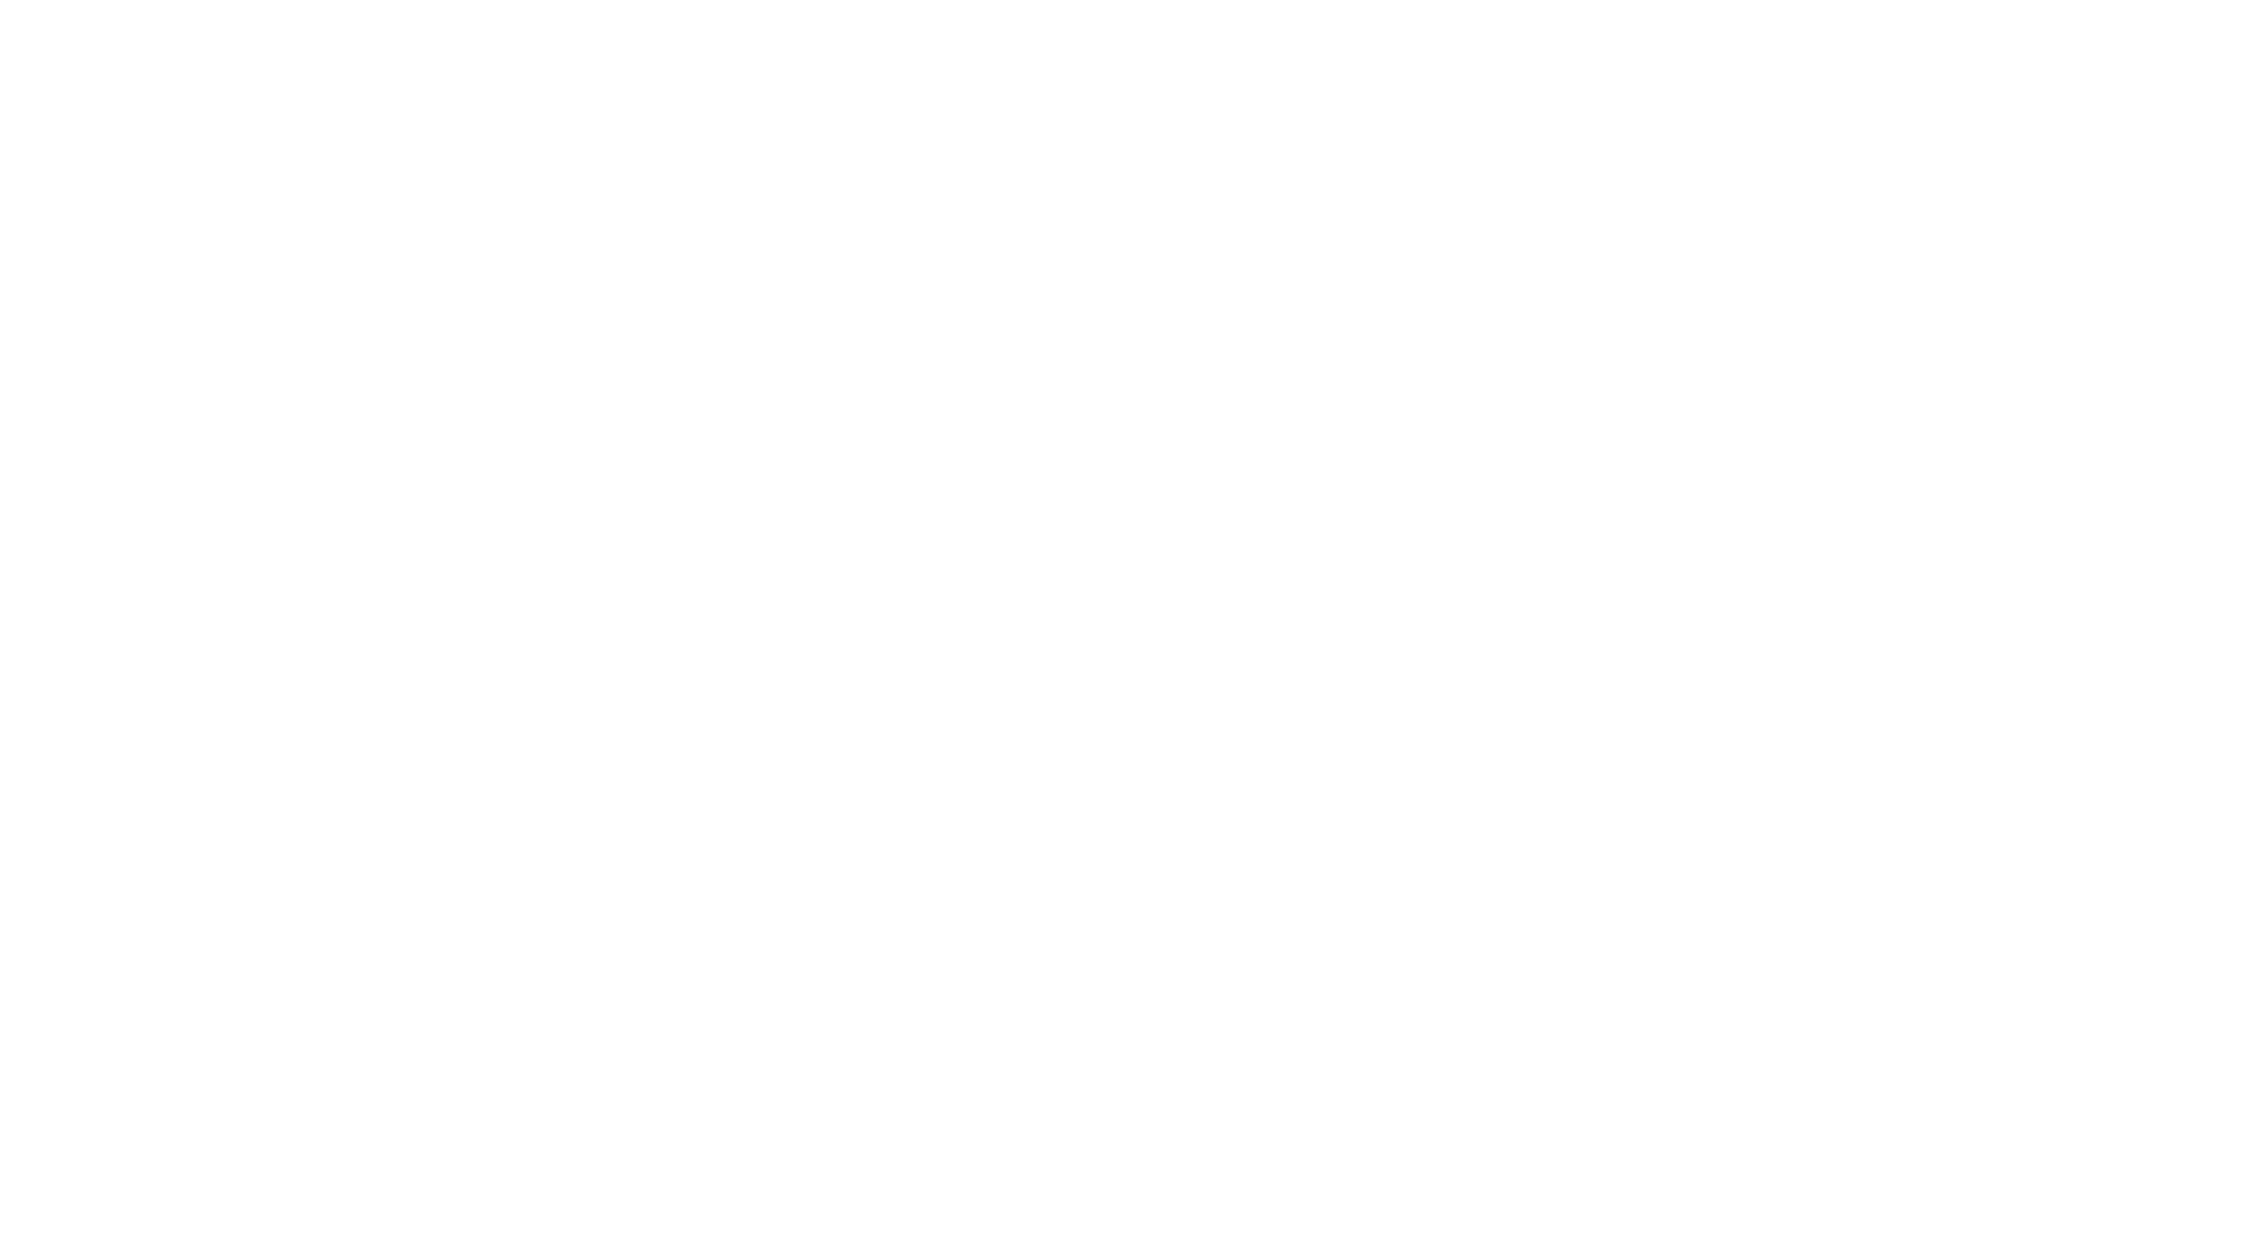 UBI Business School